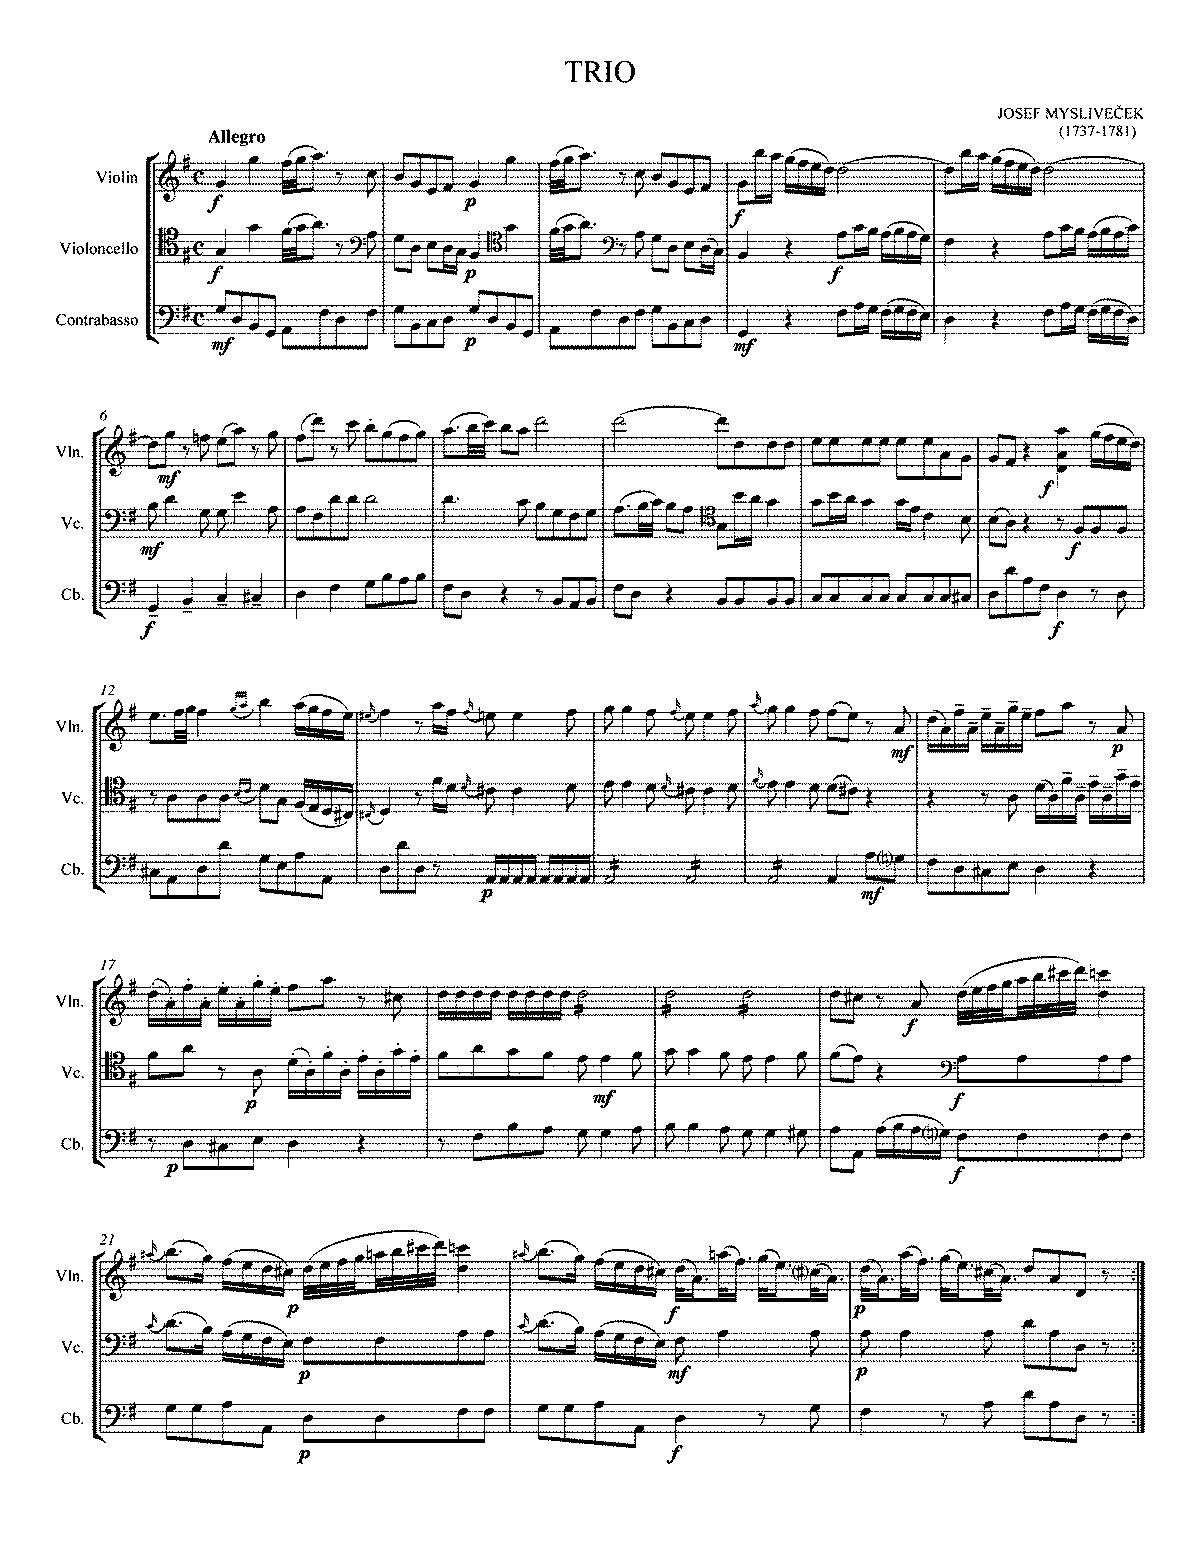 Trio in G major (Mysliveček, Josef) - IMSLP